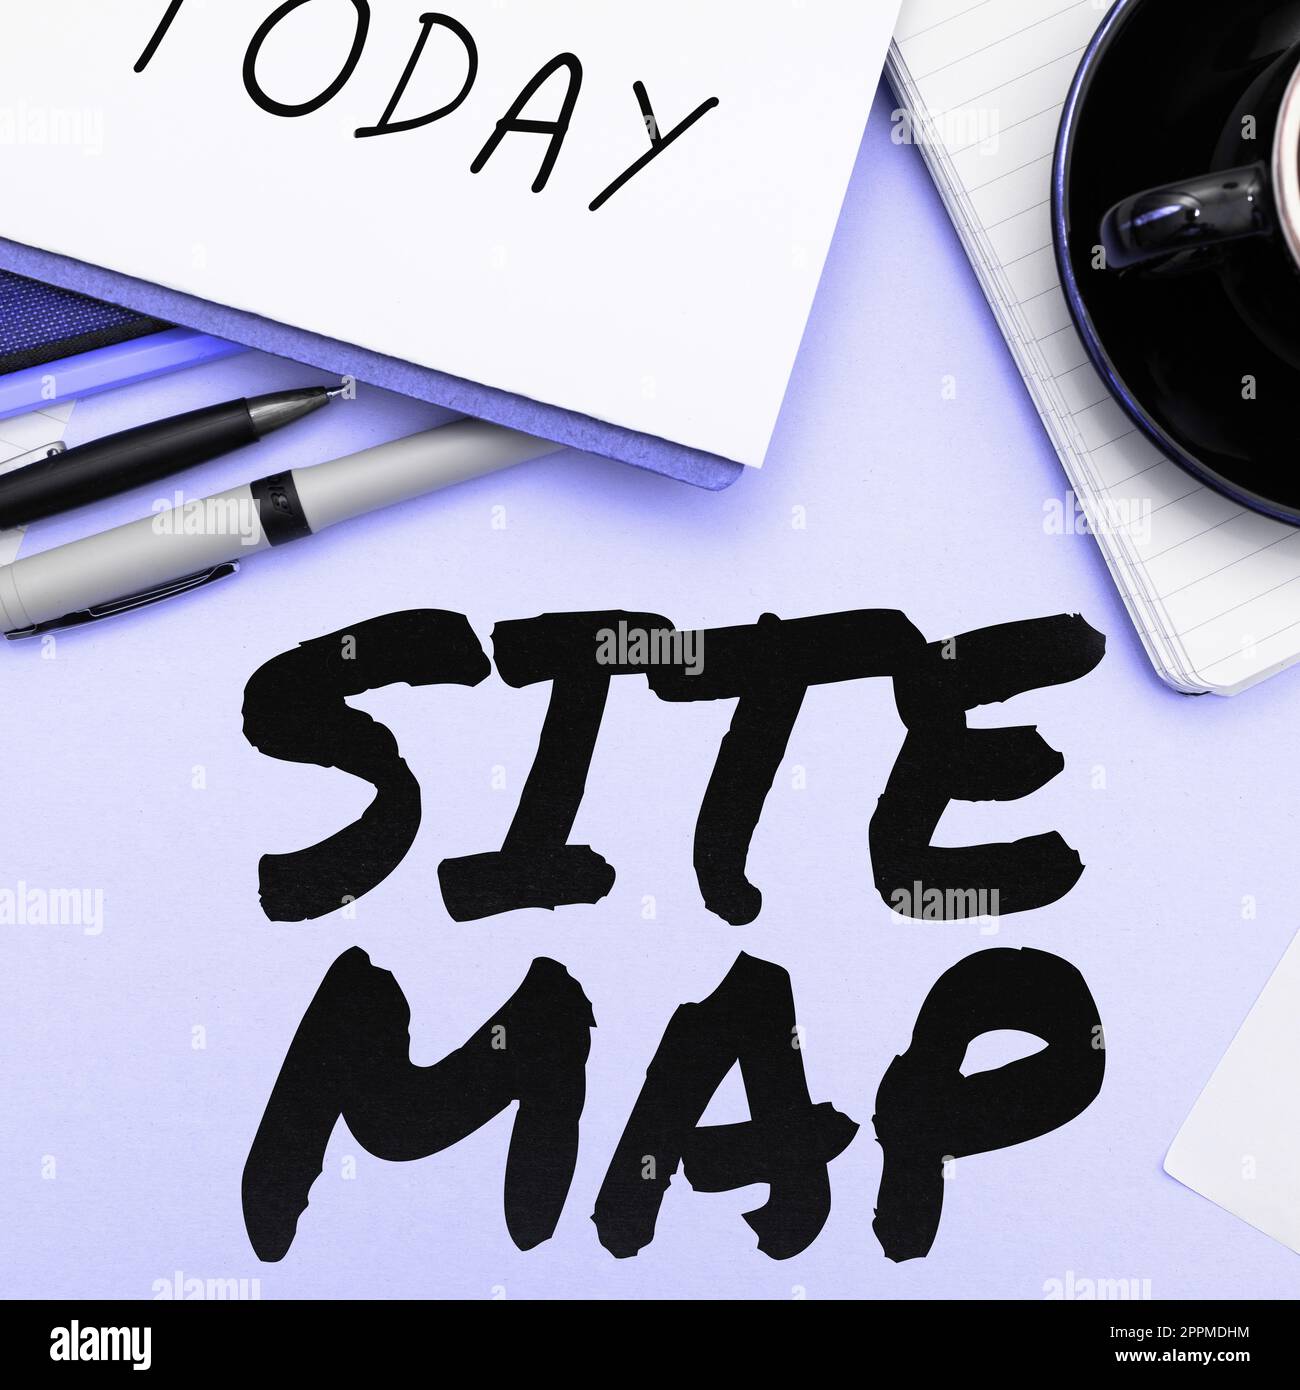 Sitemap mit handschriftlichem Text. Geschäftsüberblick, der sowohl Benutzern als auch Suchmaschinen die Navigation auf der Website erleichtert Stockfoto